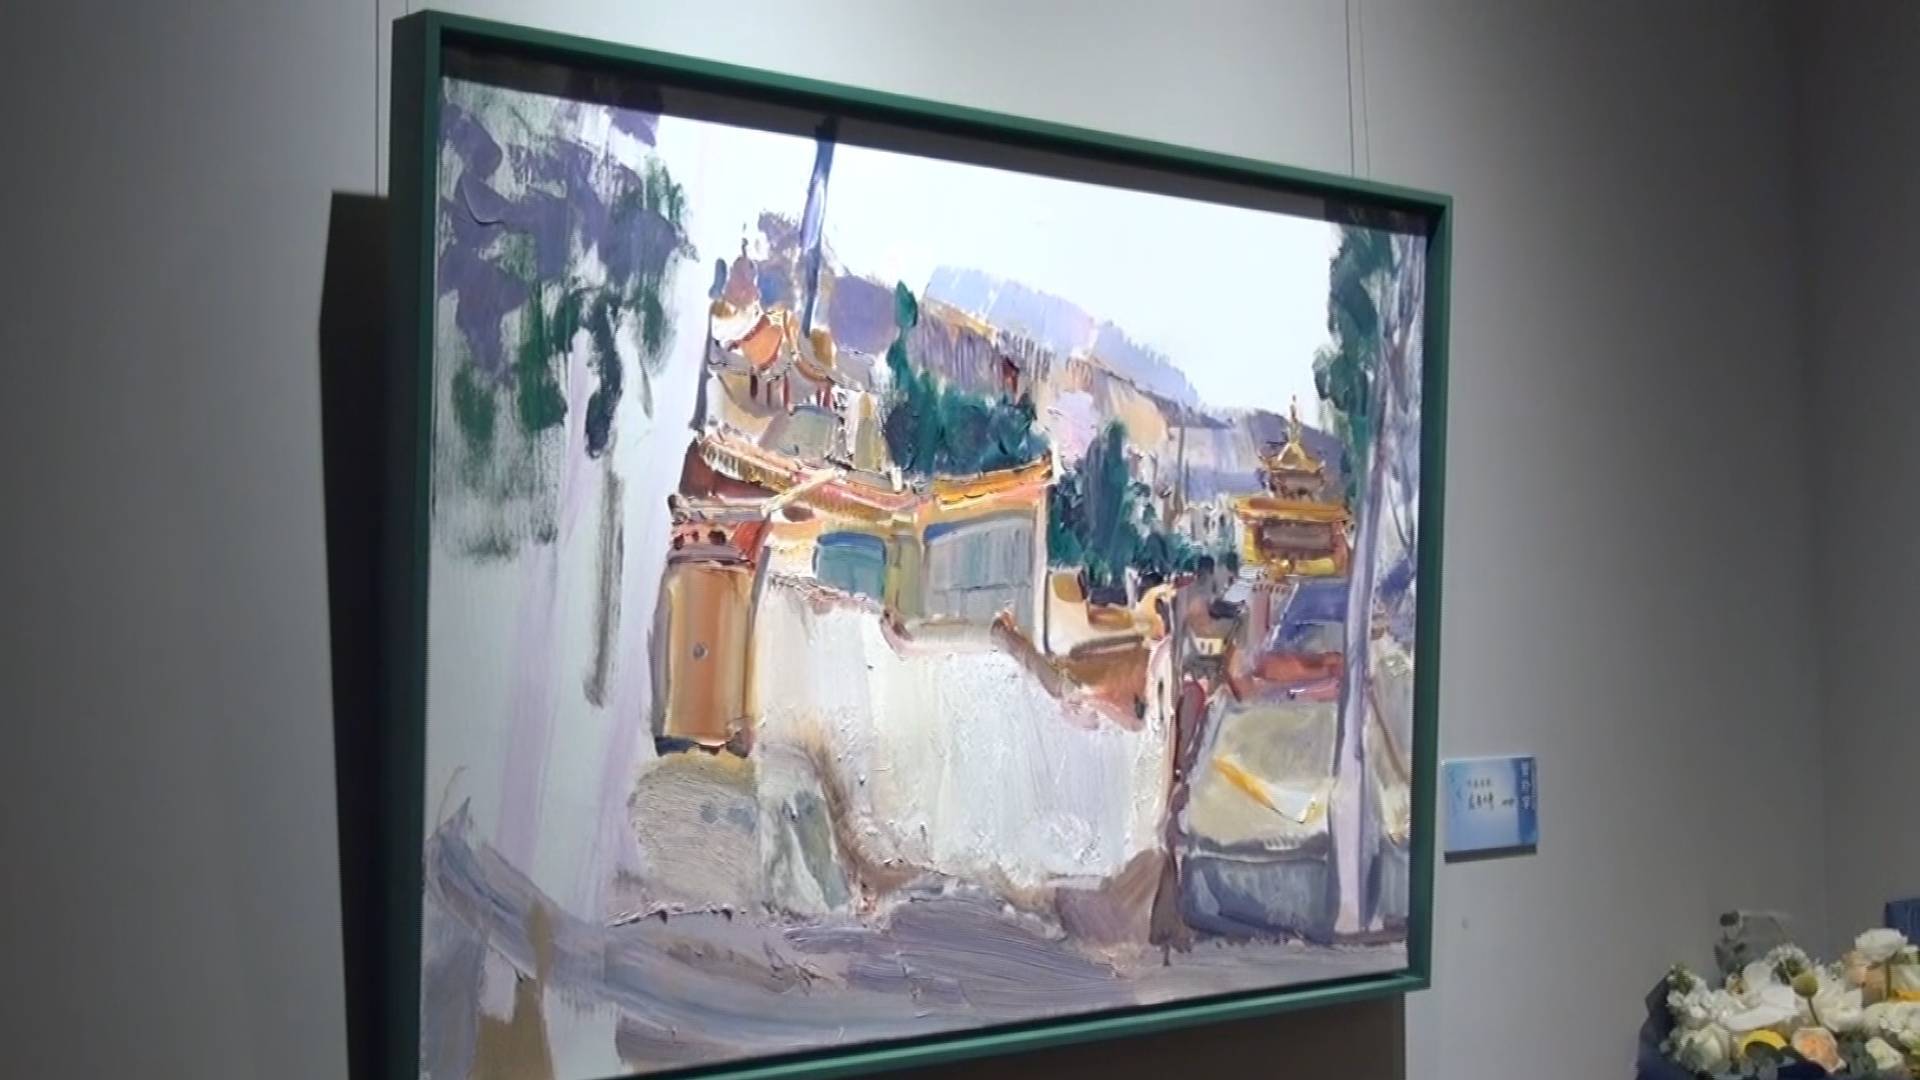 “生活在别处——管朴学油画作品展”在济南开展 54幅作品展出至4月3日